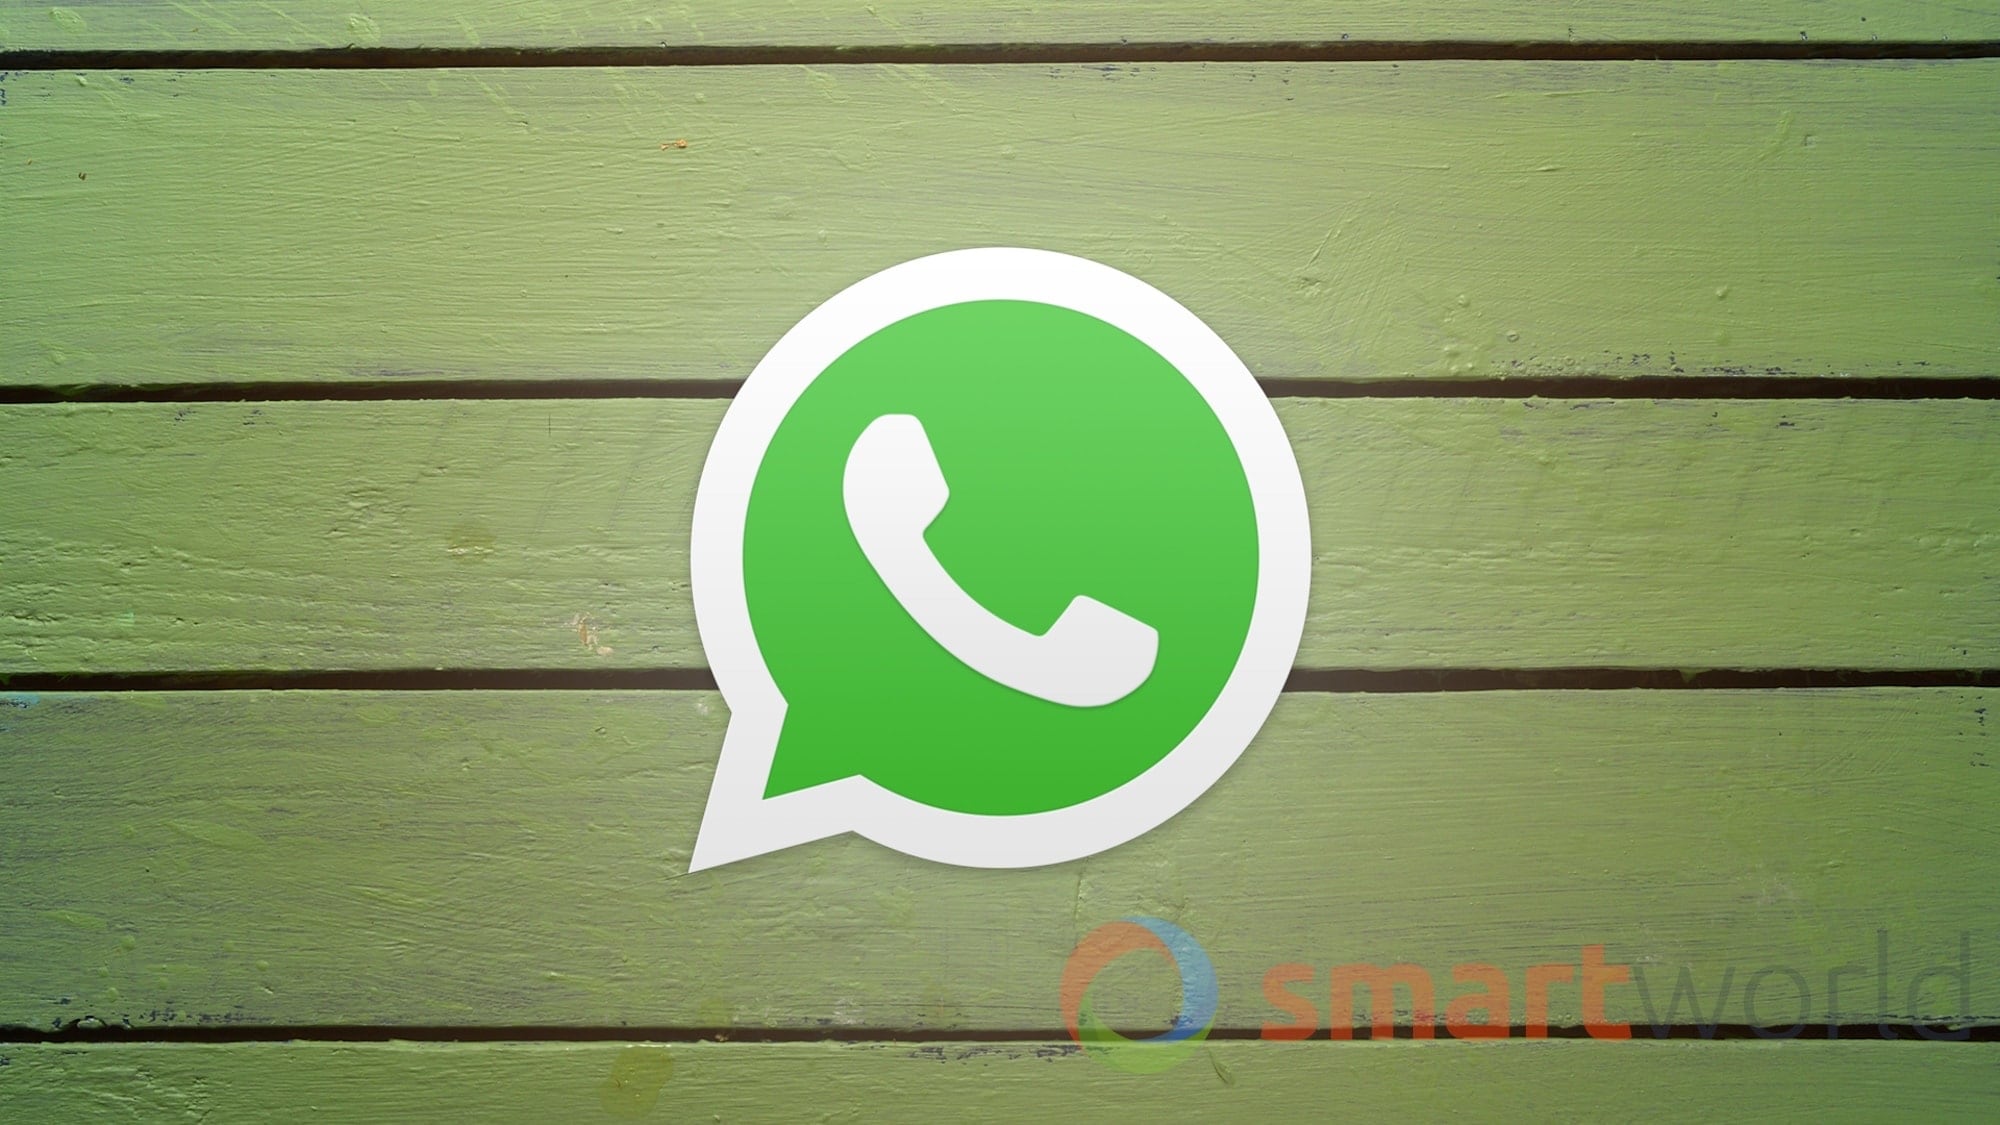 Nuovo aggiornamento per WhatsApp su Android: ecco le nuove emoji (foto)